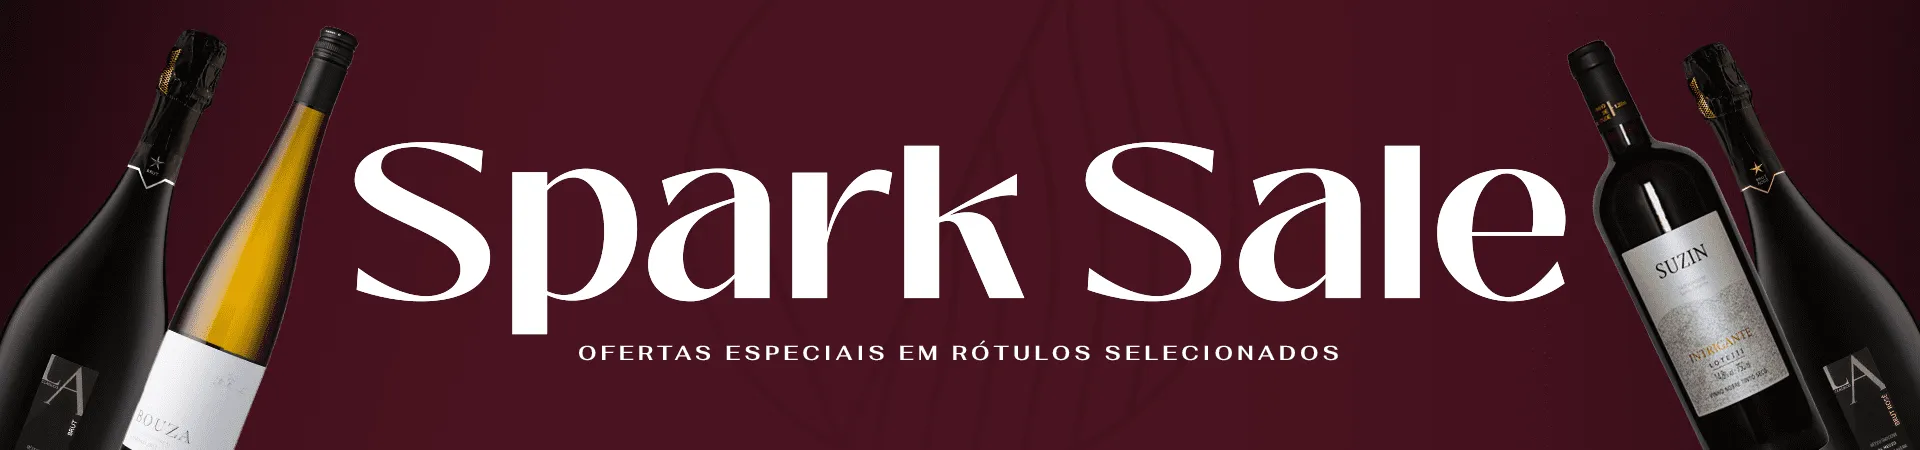 banner-spark-sale-desktop